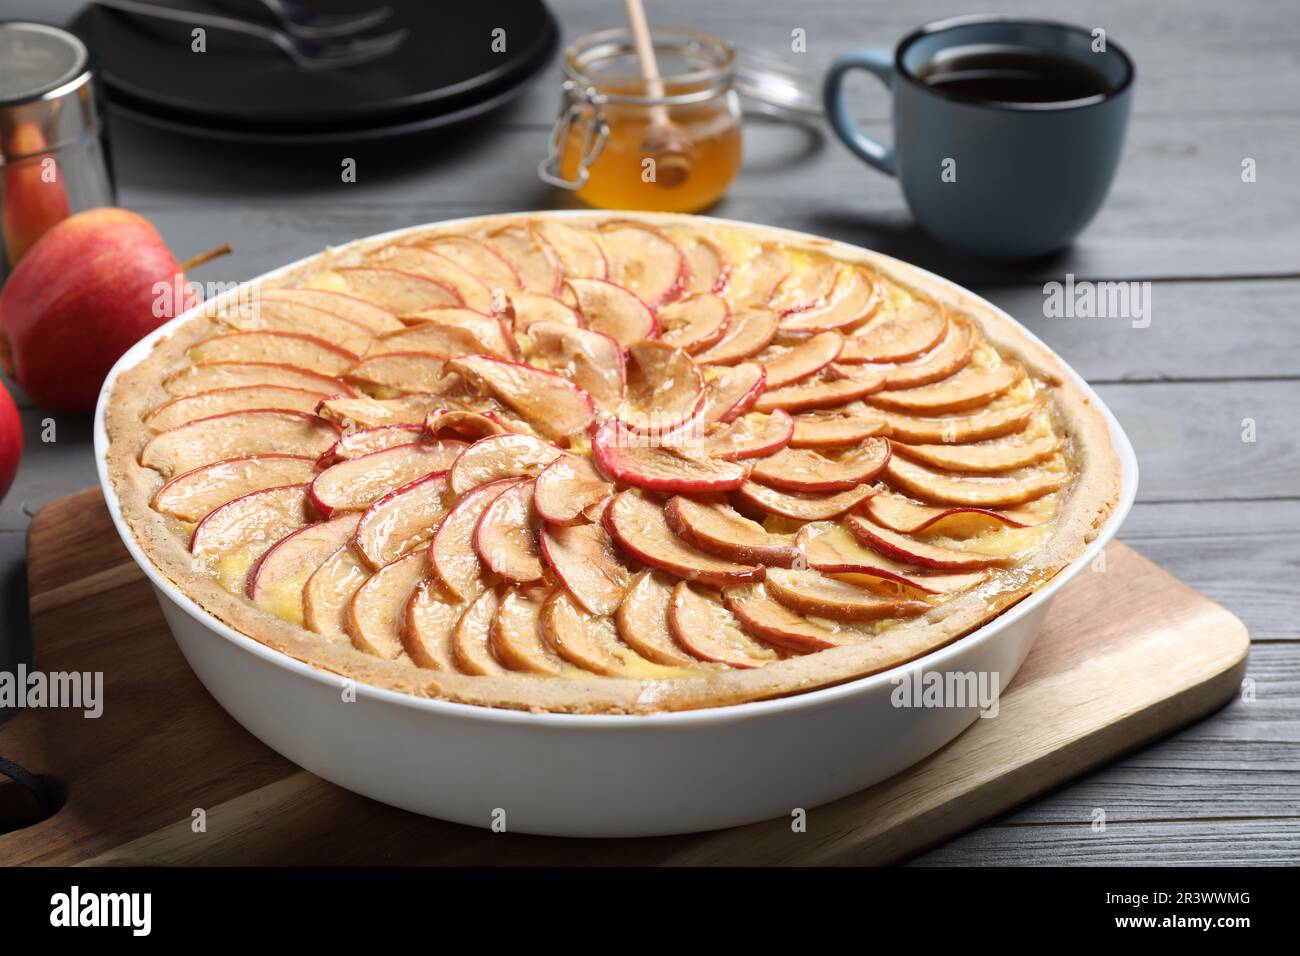 Tasty apple pie on grey wooden table Stock Photo